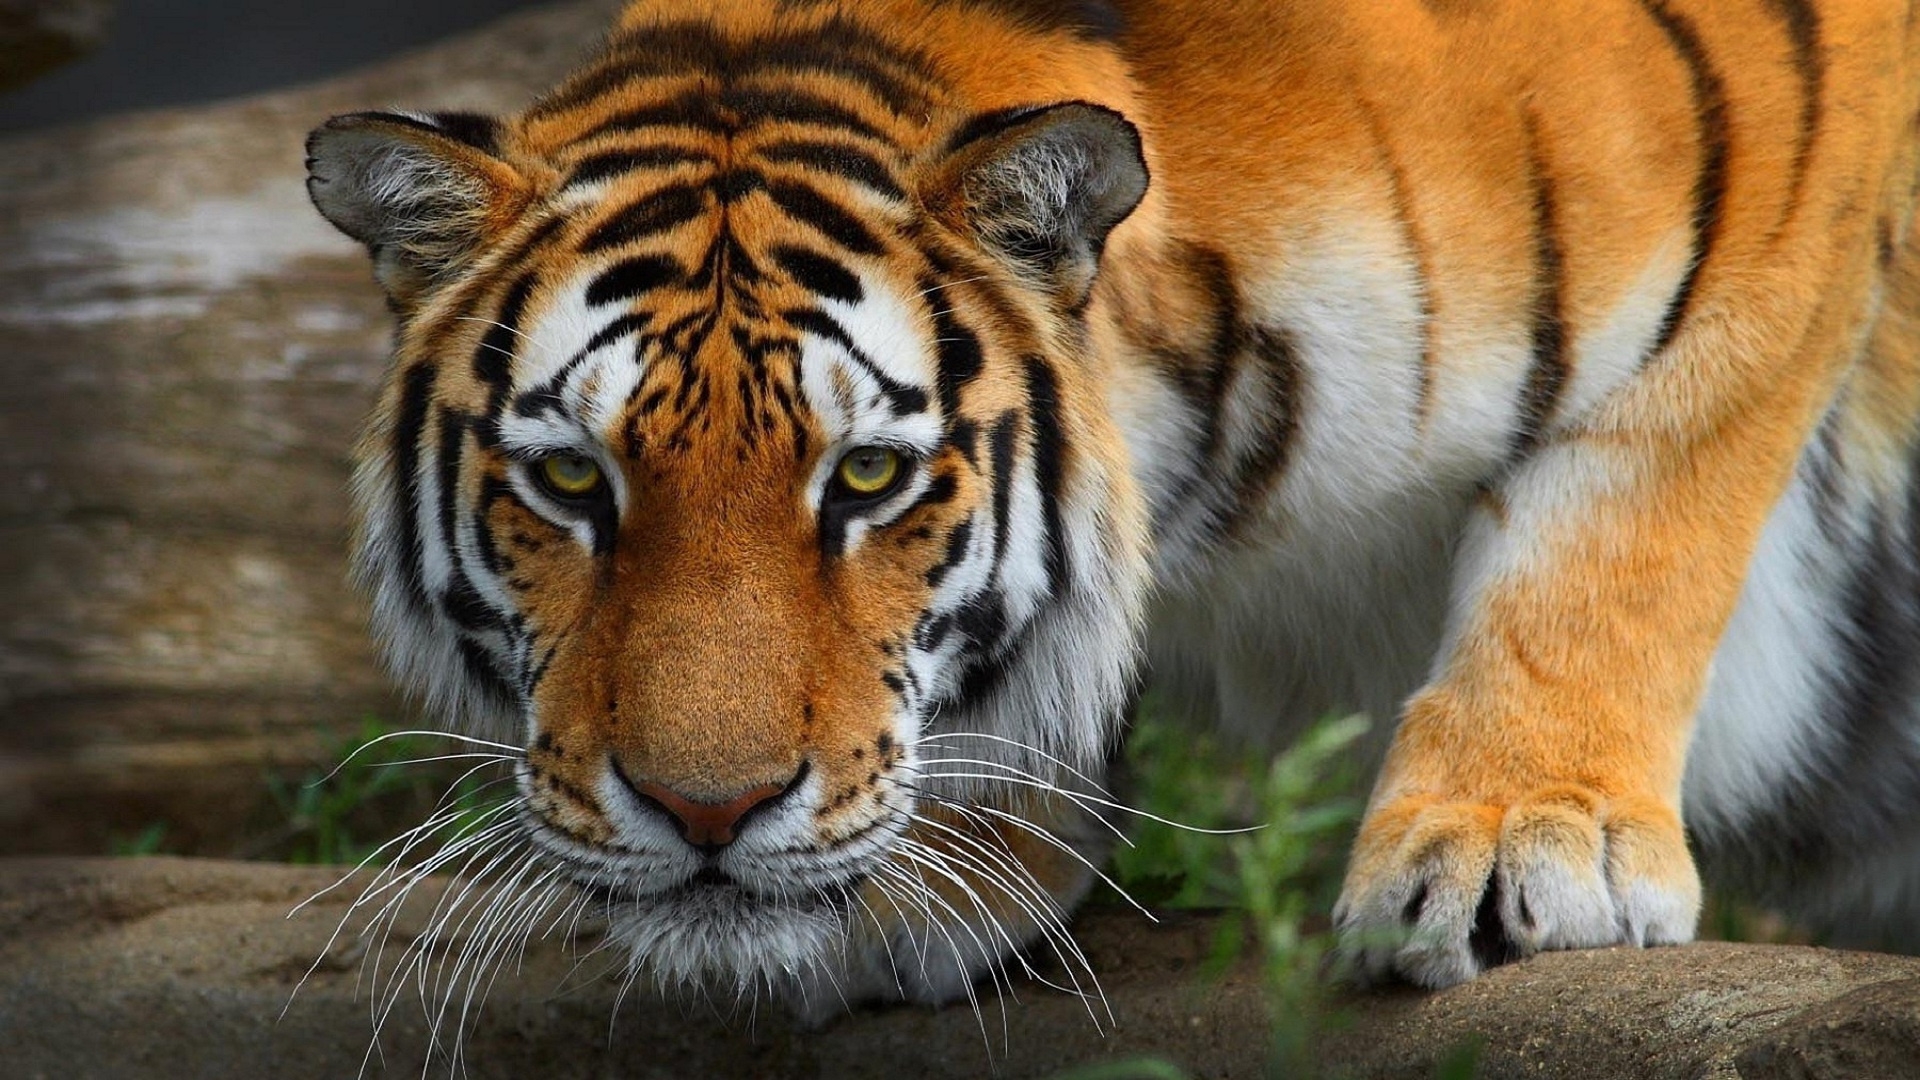 tiger hd wallpaper,tiger,wildlife,mammal,vertebrate,terrestrial animal